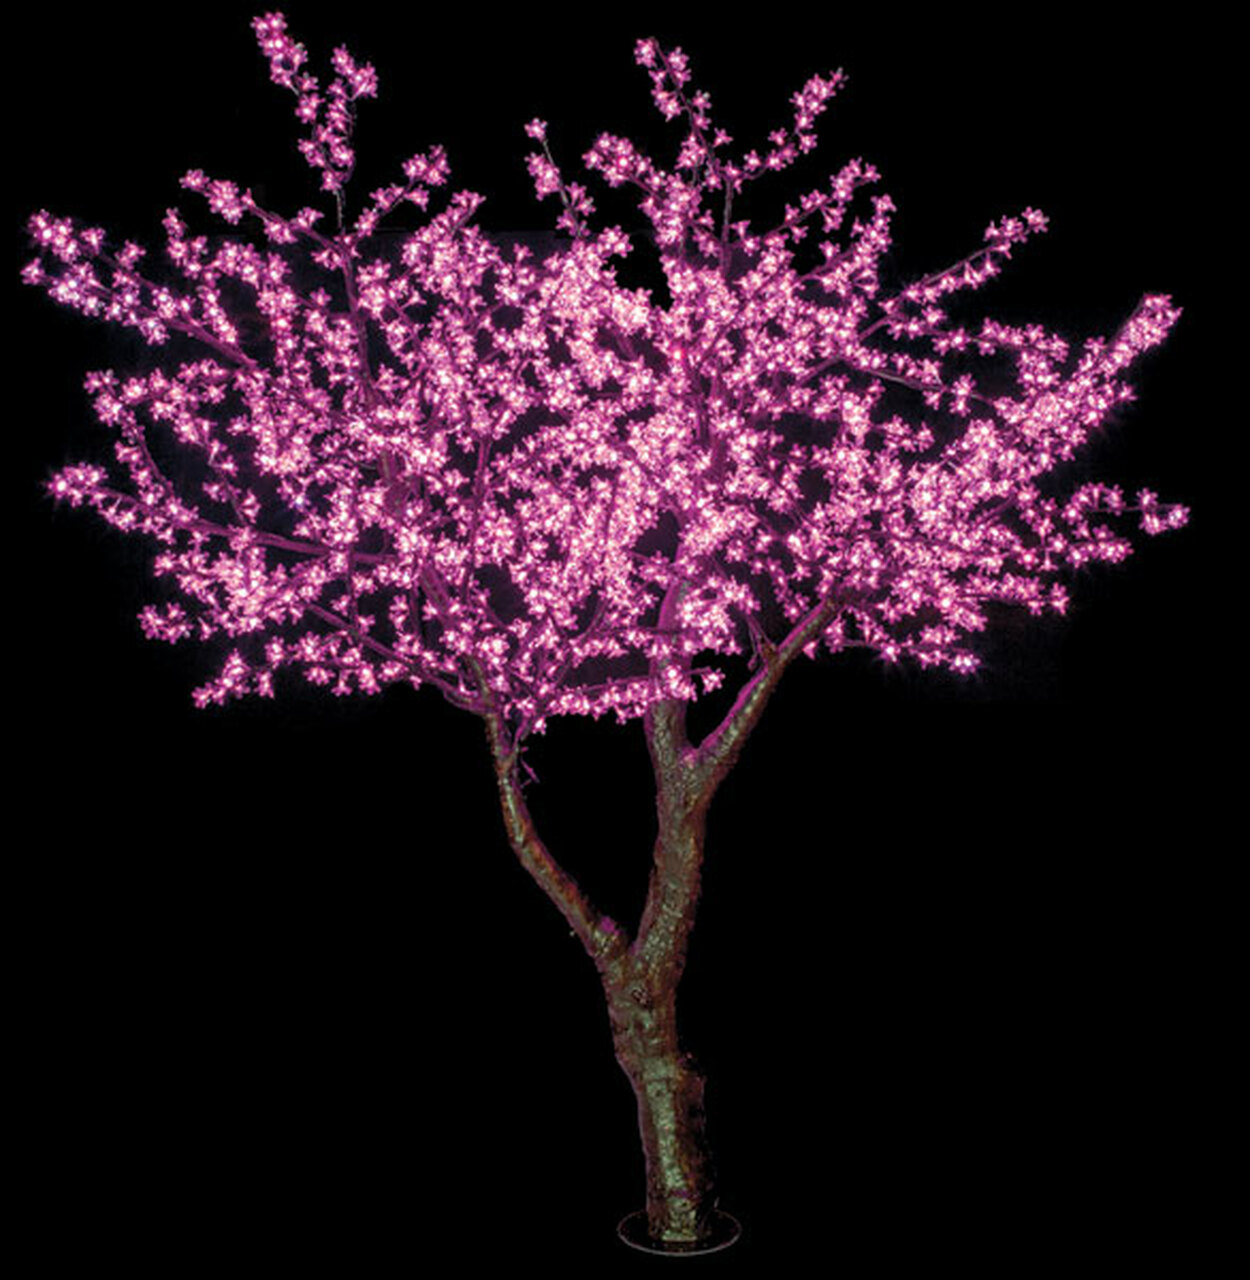 have på Formindske håndtering Lighted Topiary - 8 foot Prelit Cherry Blossom with PINK lights